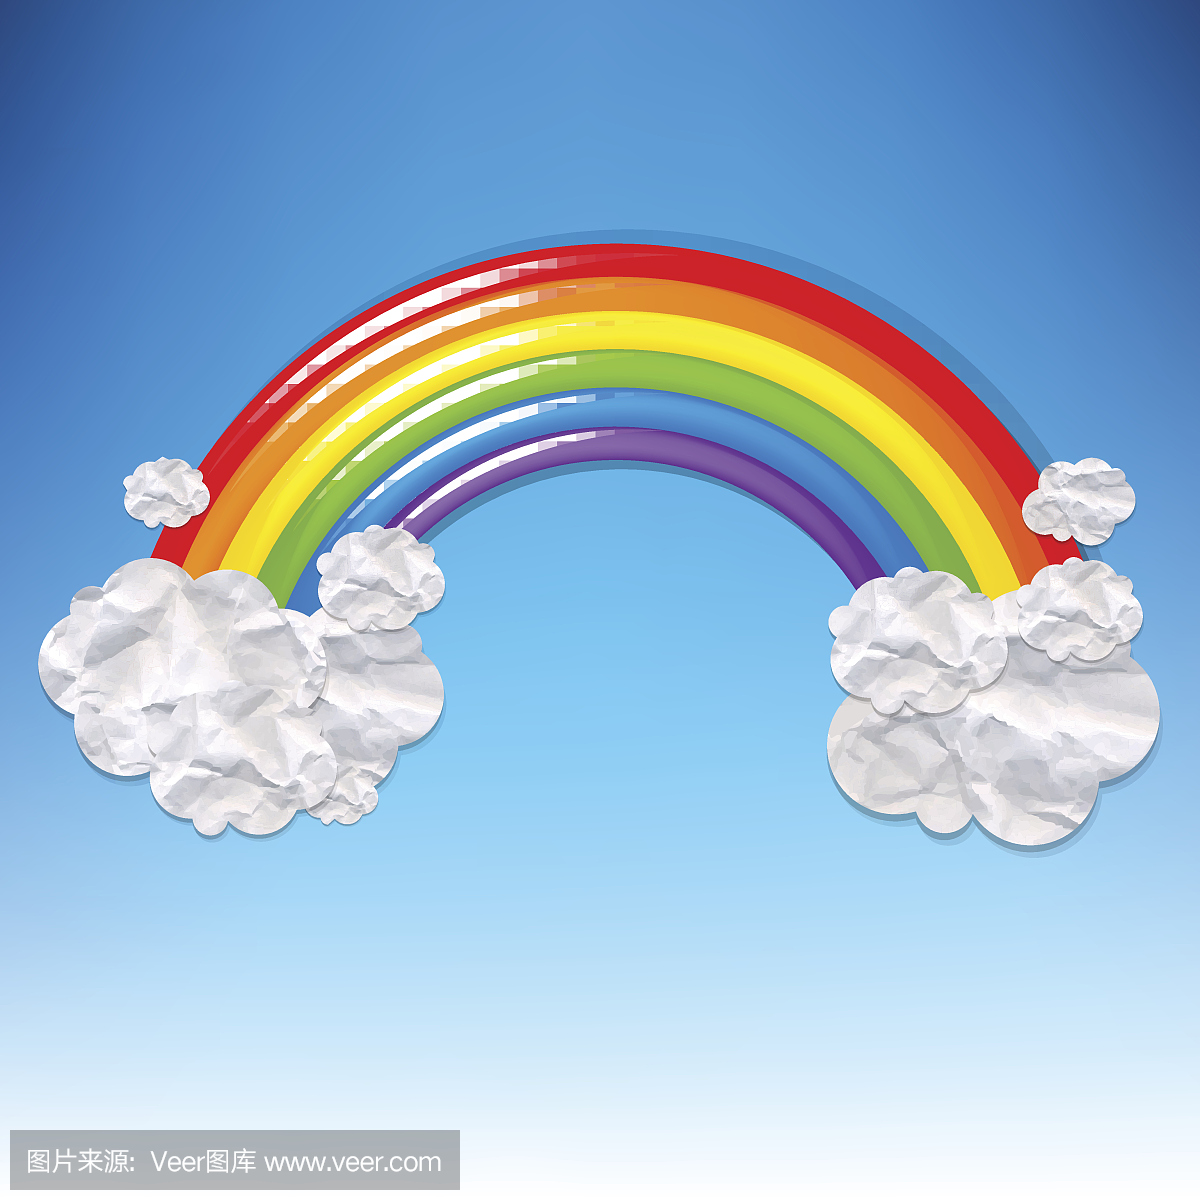 彩色彩虹卡通表情包貼圖可愛雲朵, 彩色, 彩虹, 卡通素材圖案，PSD和PNG圖片免費下載